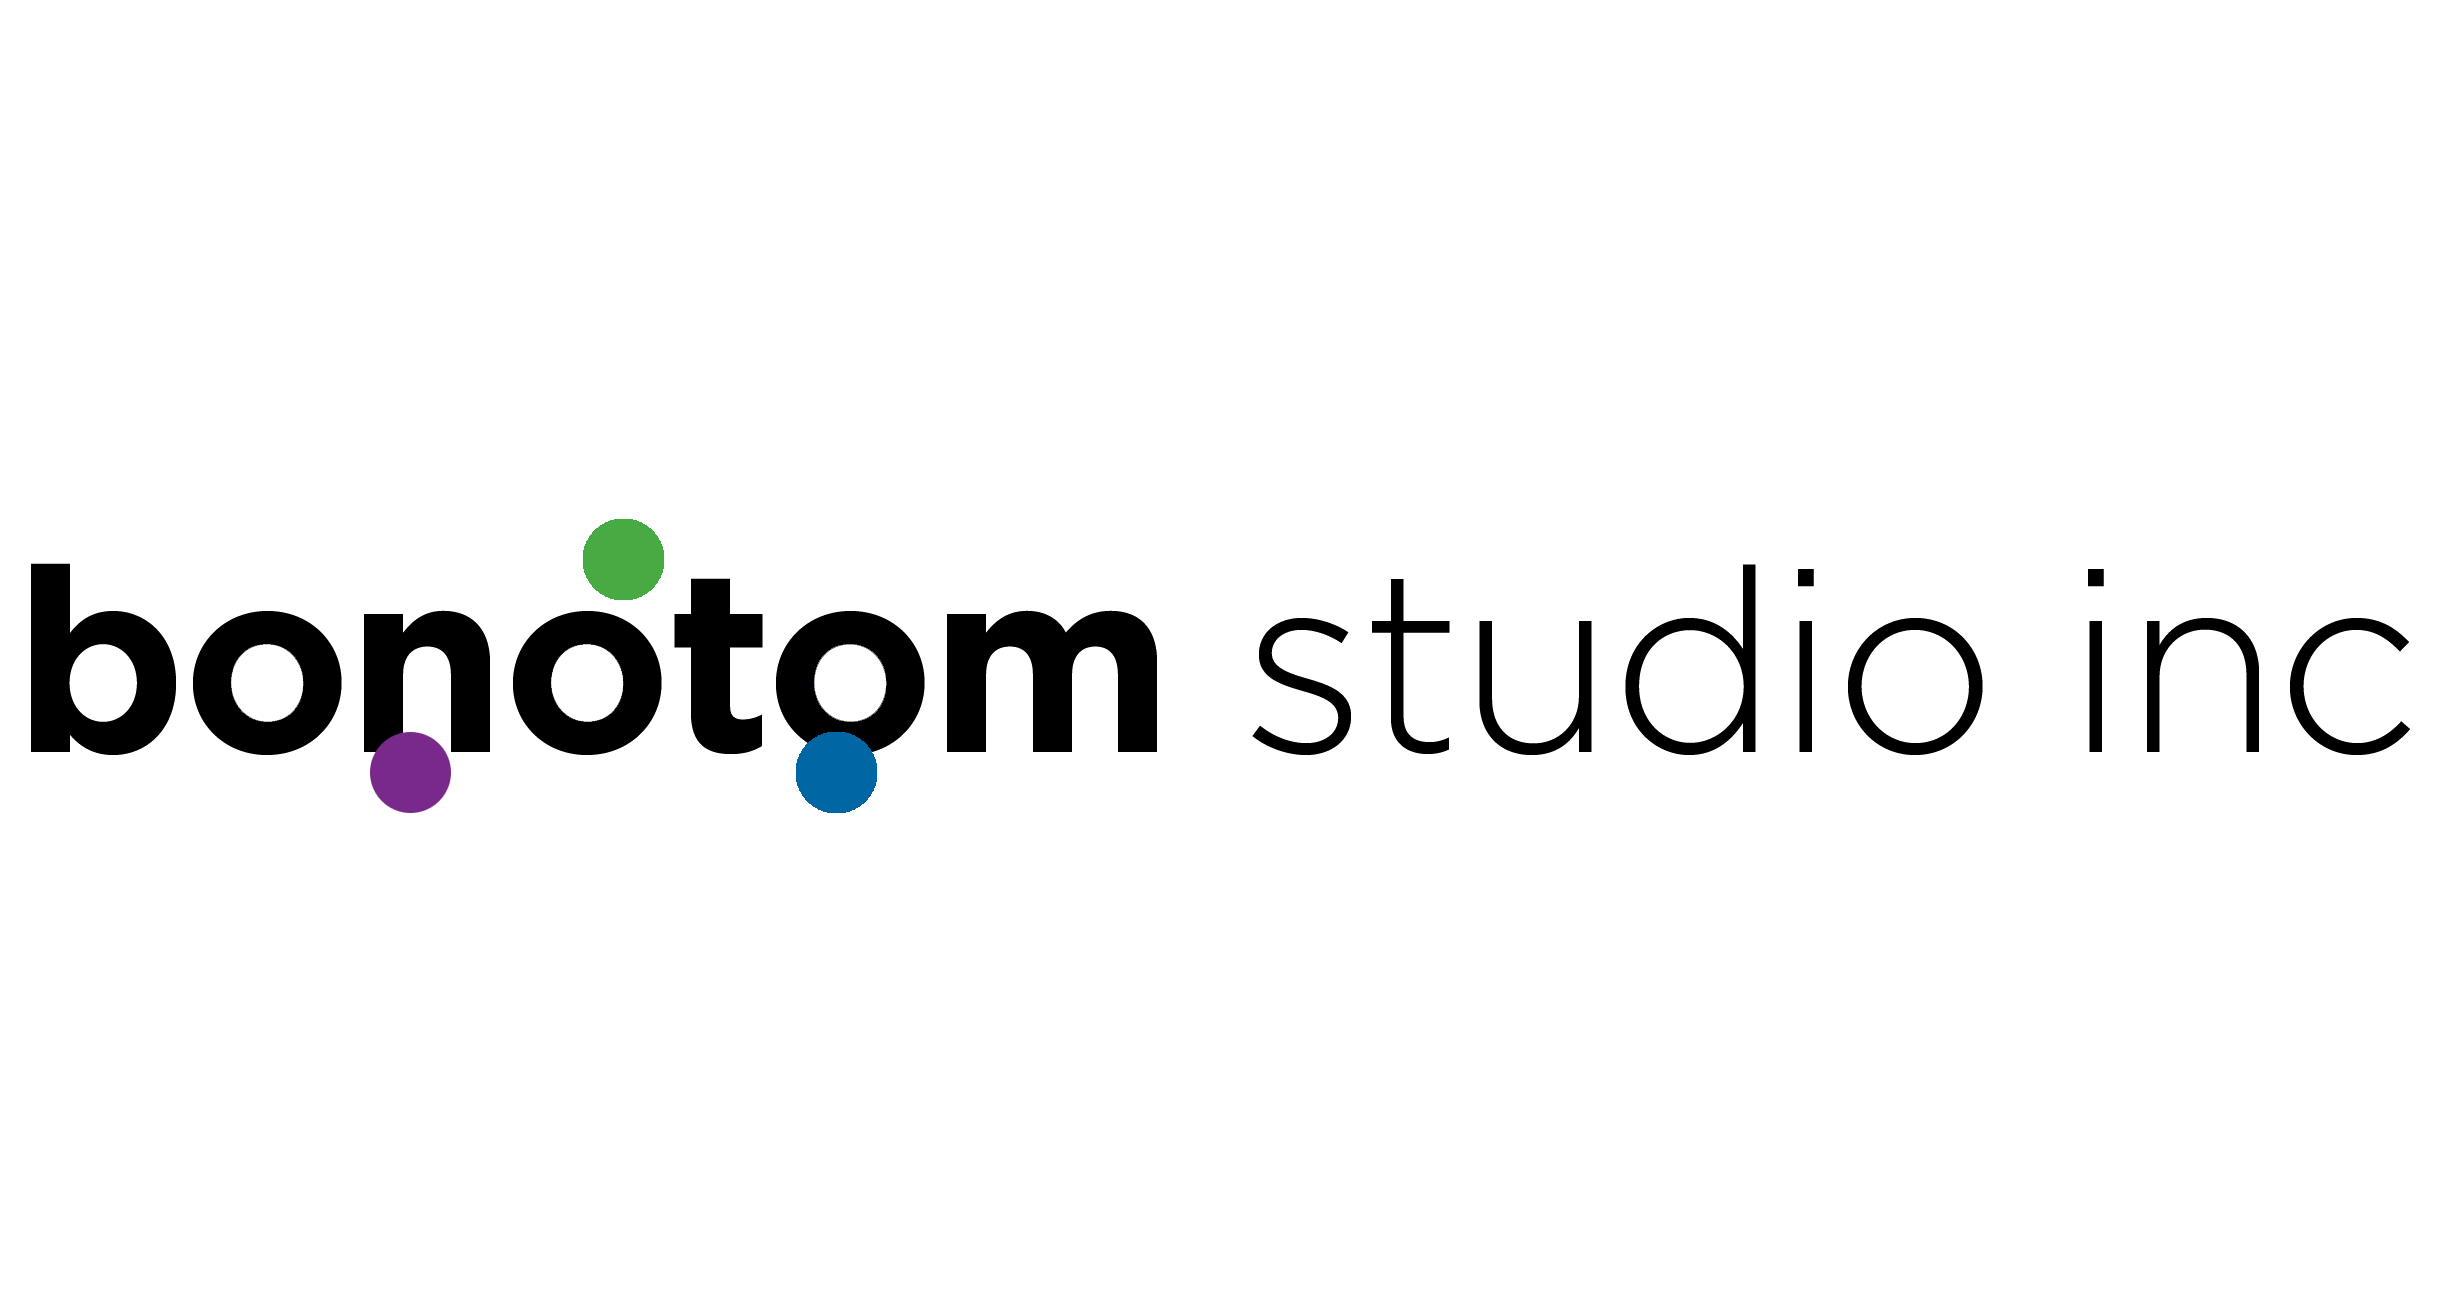 Bontom studio inc Home logo.